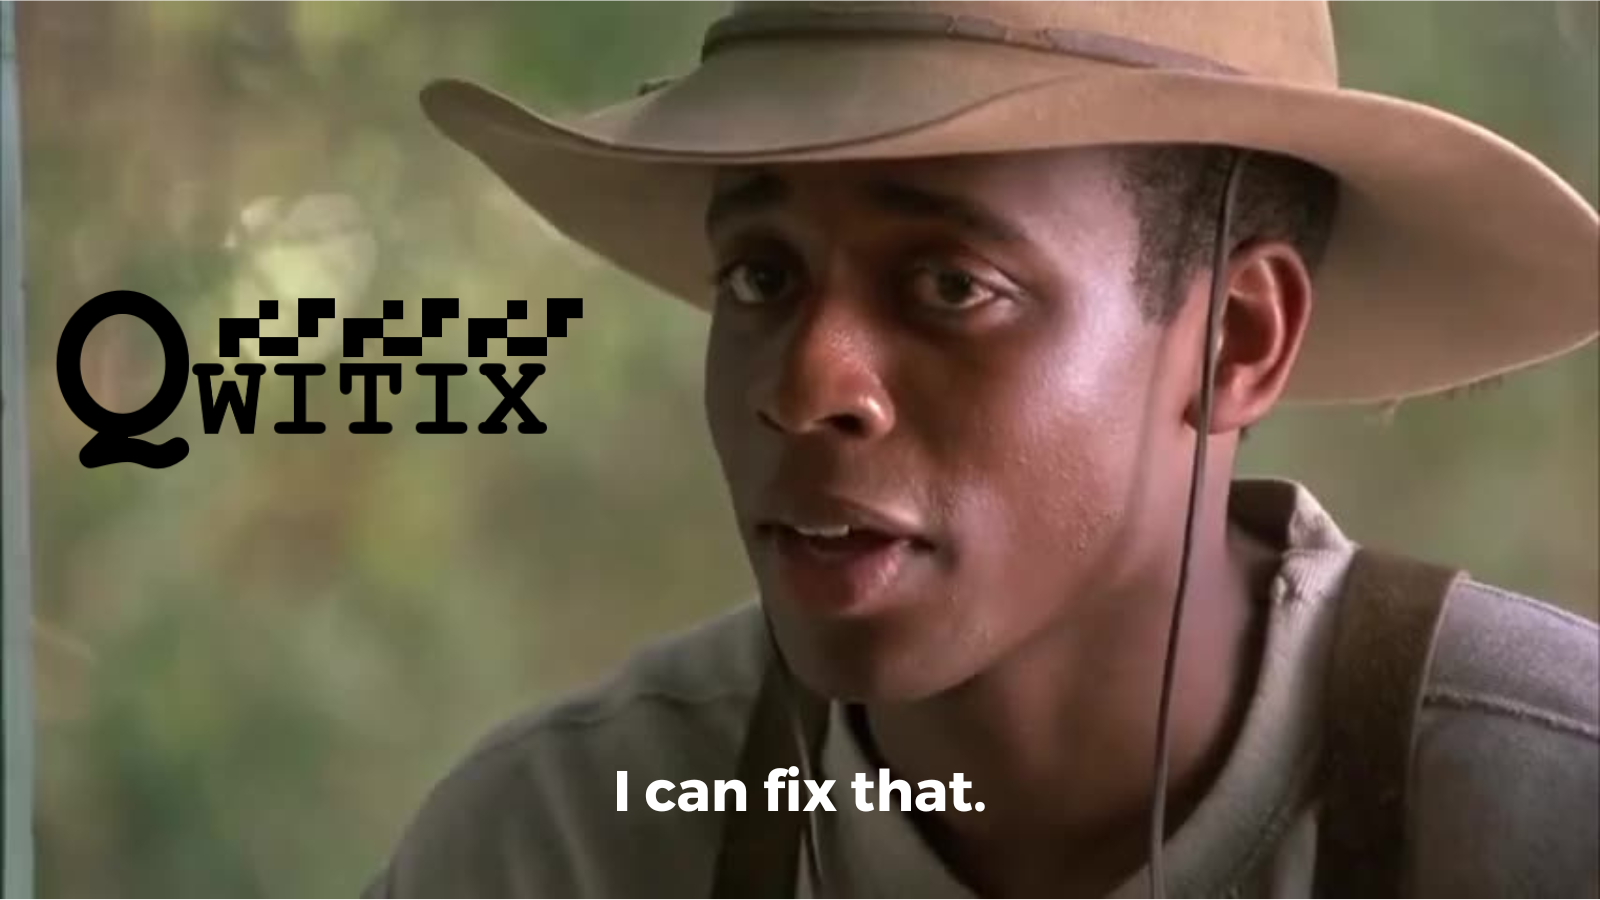 Meme saying 'I can fix that'